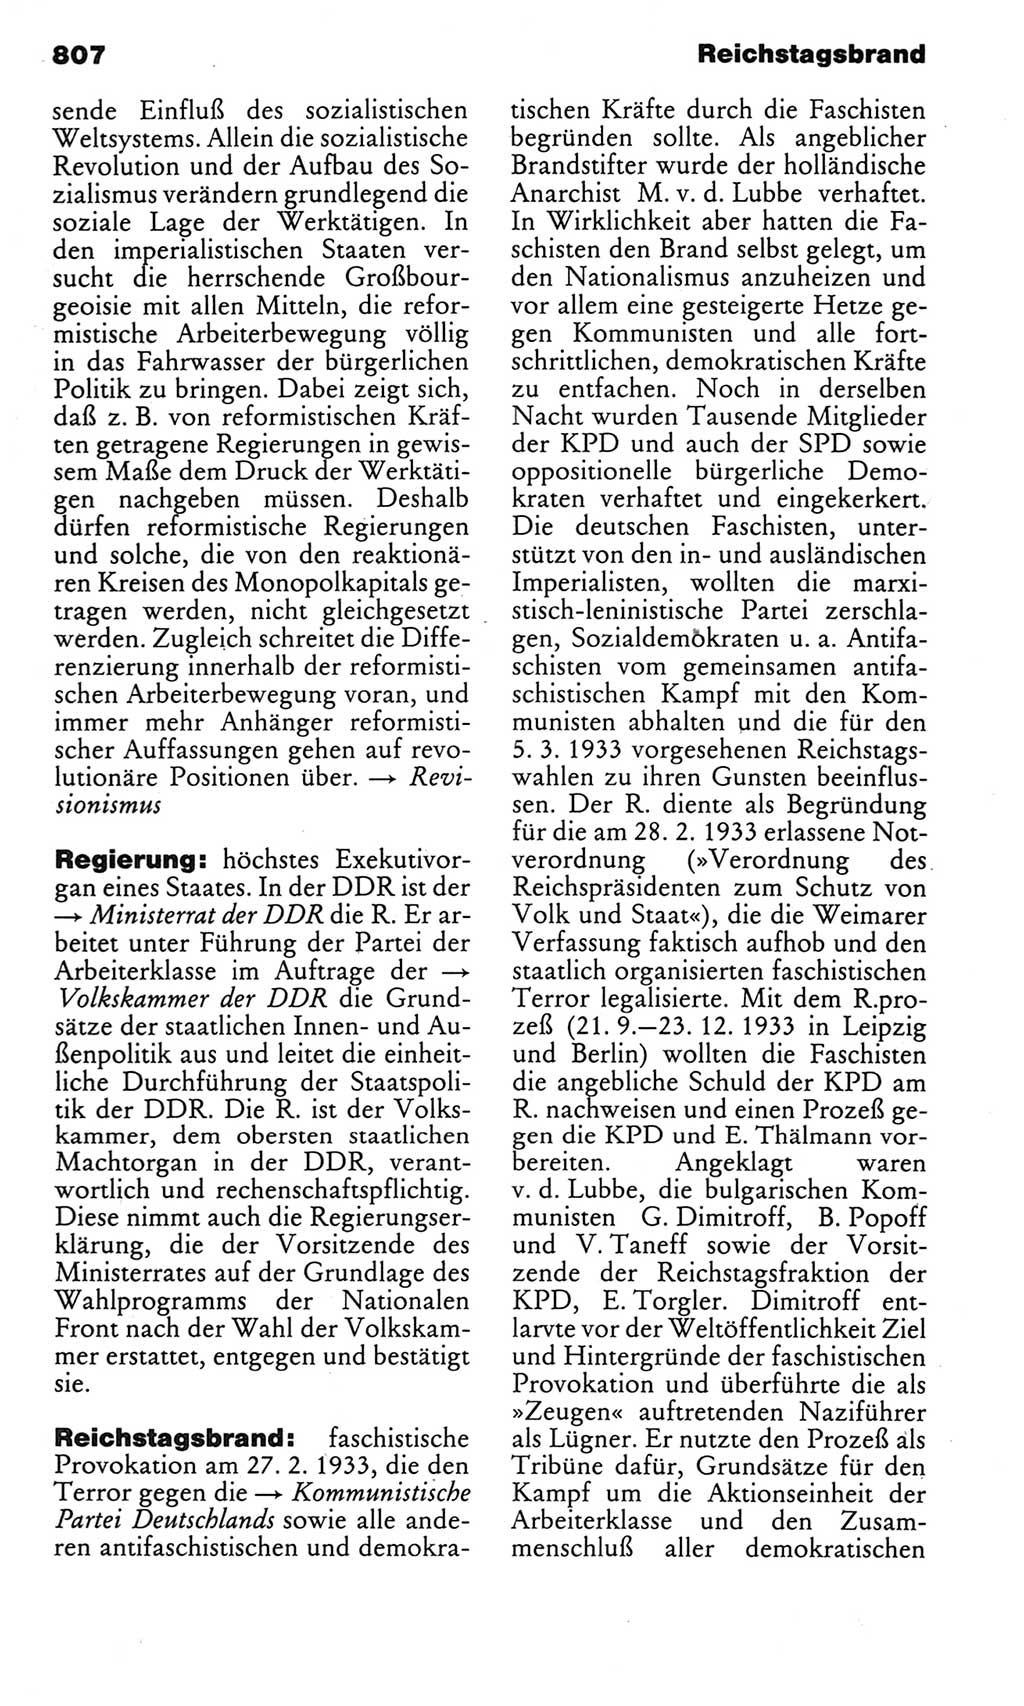 Kleines politisches Wörterbuch [Deutsche Demokratische Republik (DDR)] 1983, Seite 807 (Kl. pol. Wb. DDR 1983, S. 807)